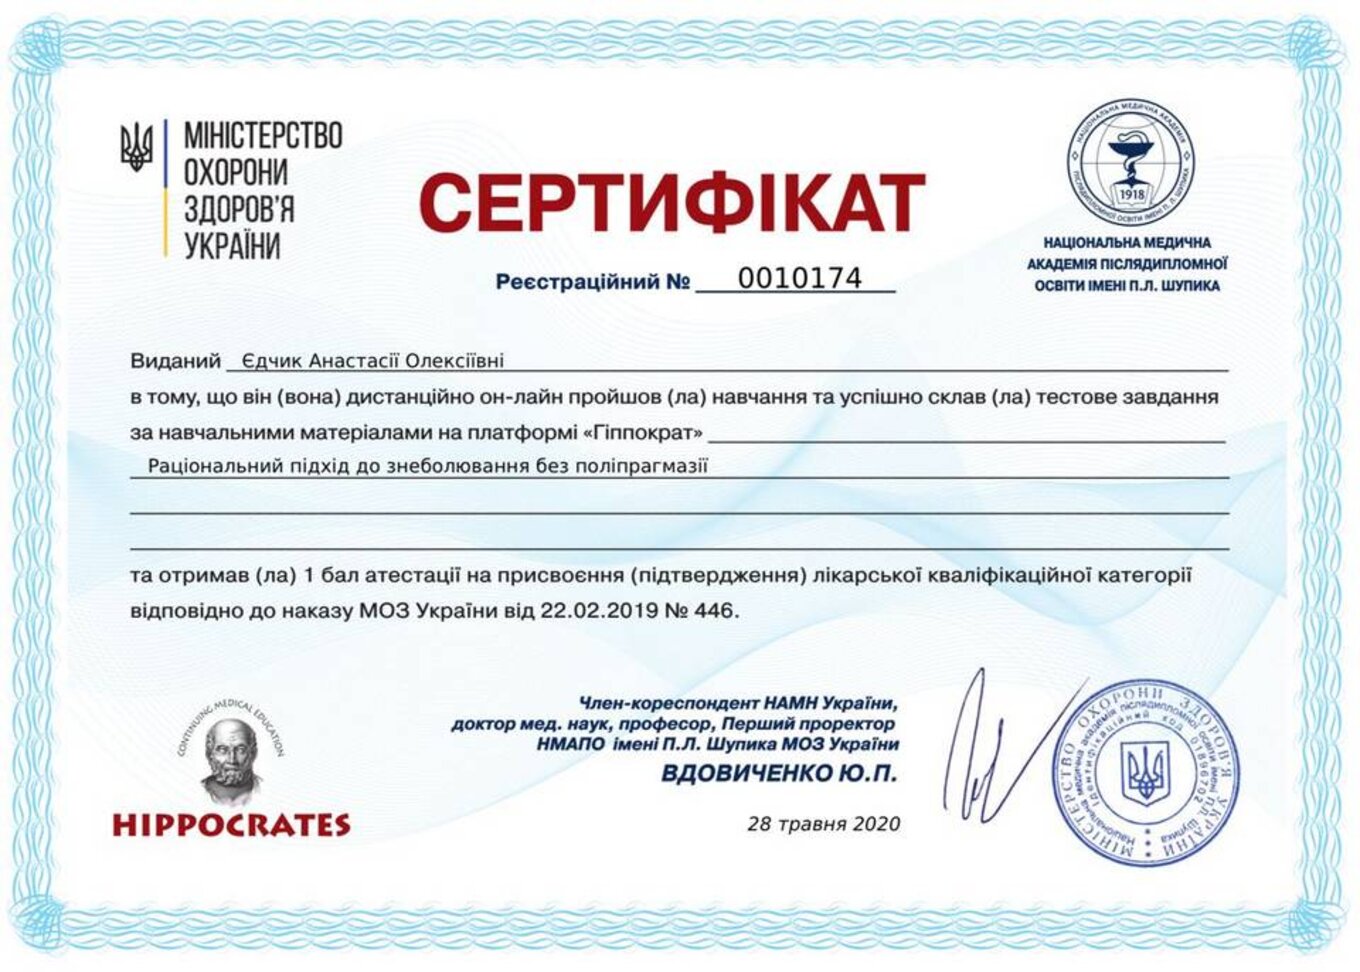 certificates/yedchik-anastasiya-oleksiyivna/erc-edchik-cert-32.jpg